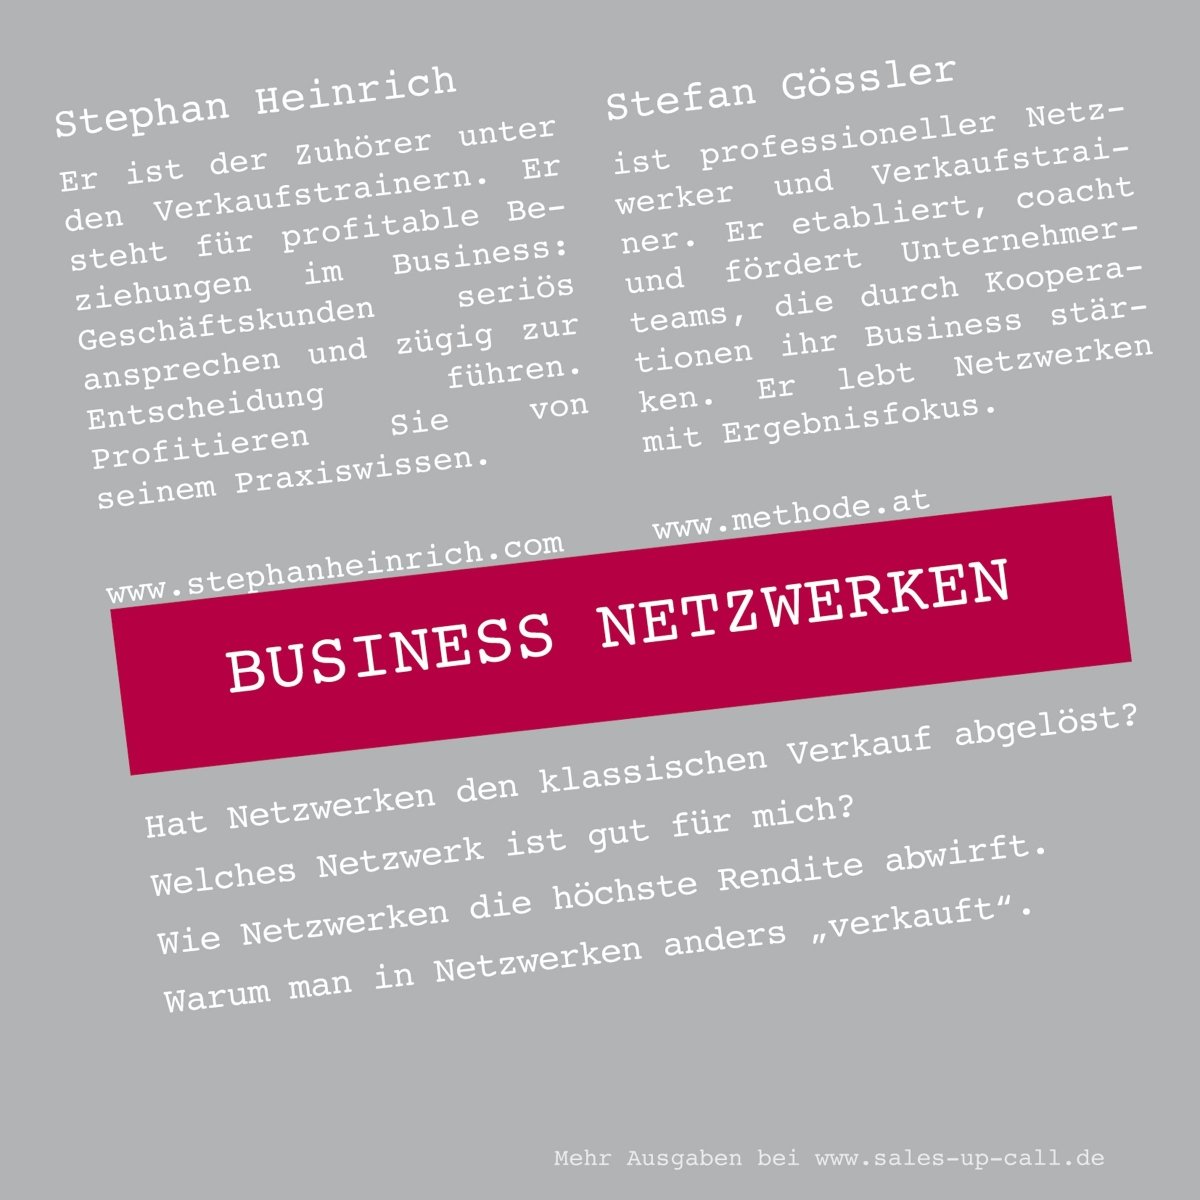 Business Netzwerken - Sales-up-Call - Stephan Heinrich